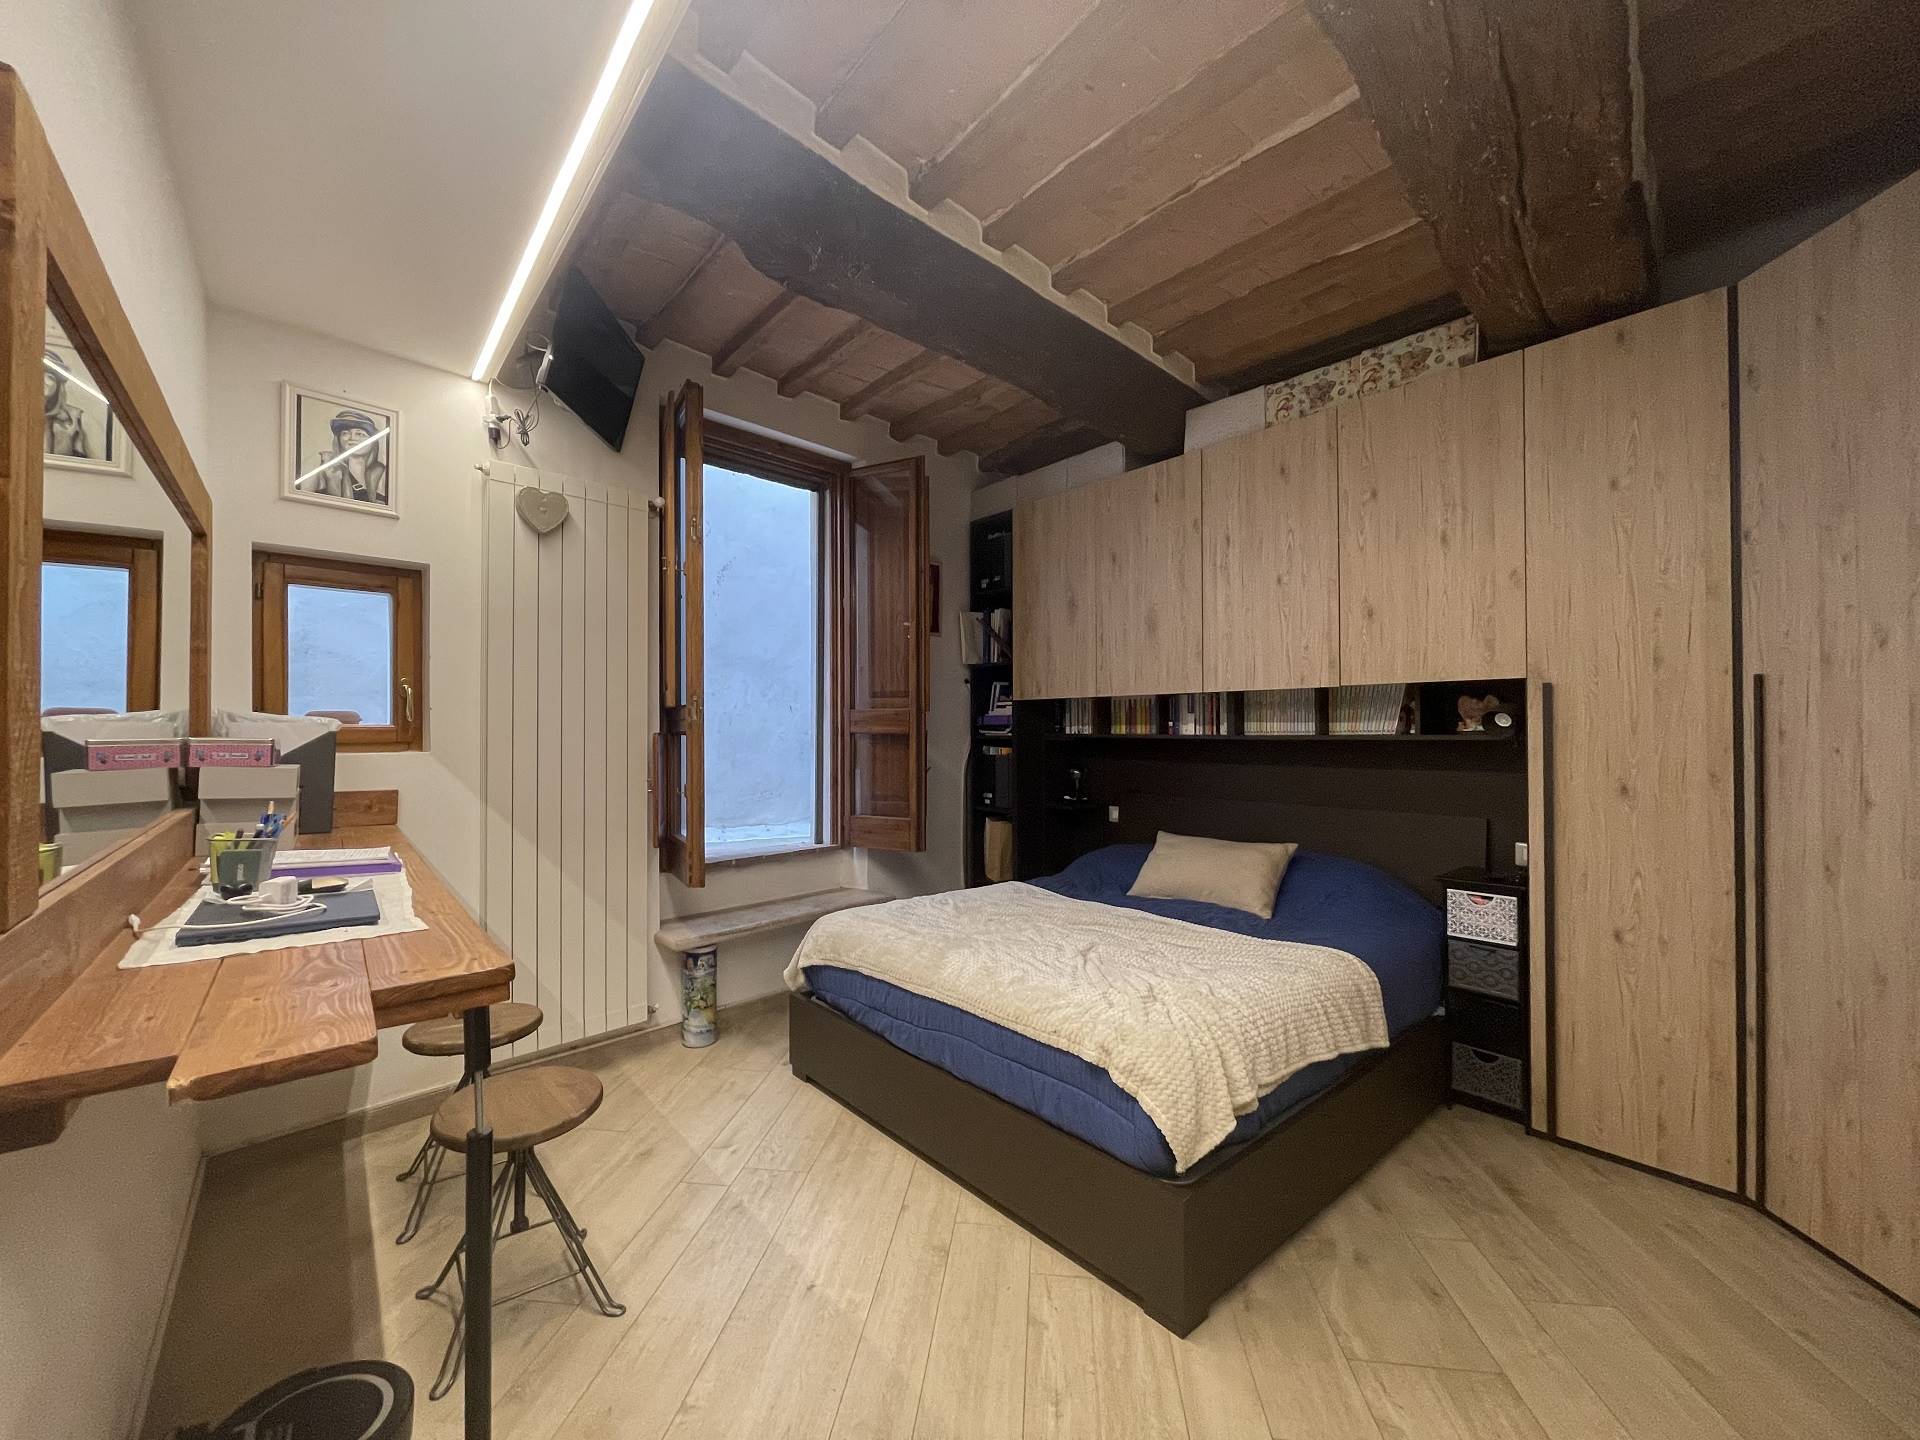 Appartamento arredato al primo piano di un piccolo condominio di sole tre unità a 600 mt da Piazza del Campo, recentemente ristrutturato. Dispone di 